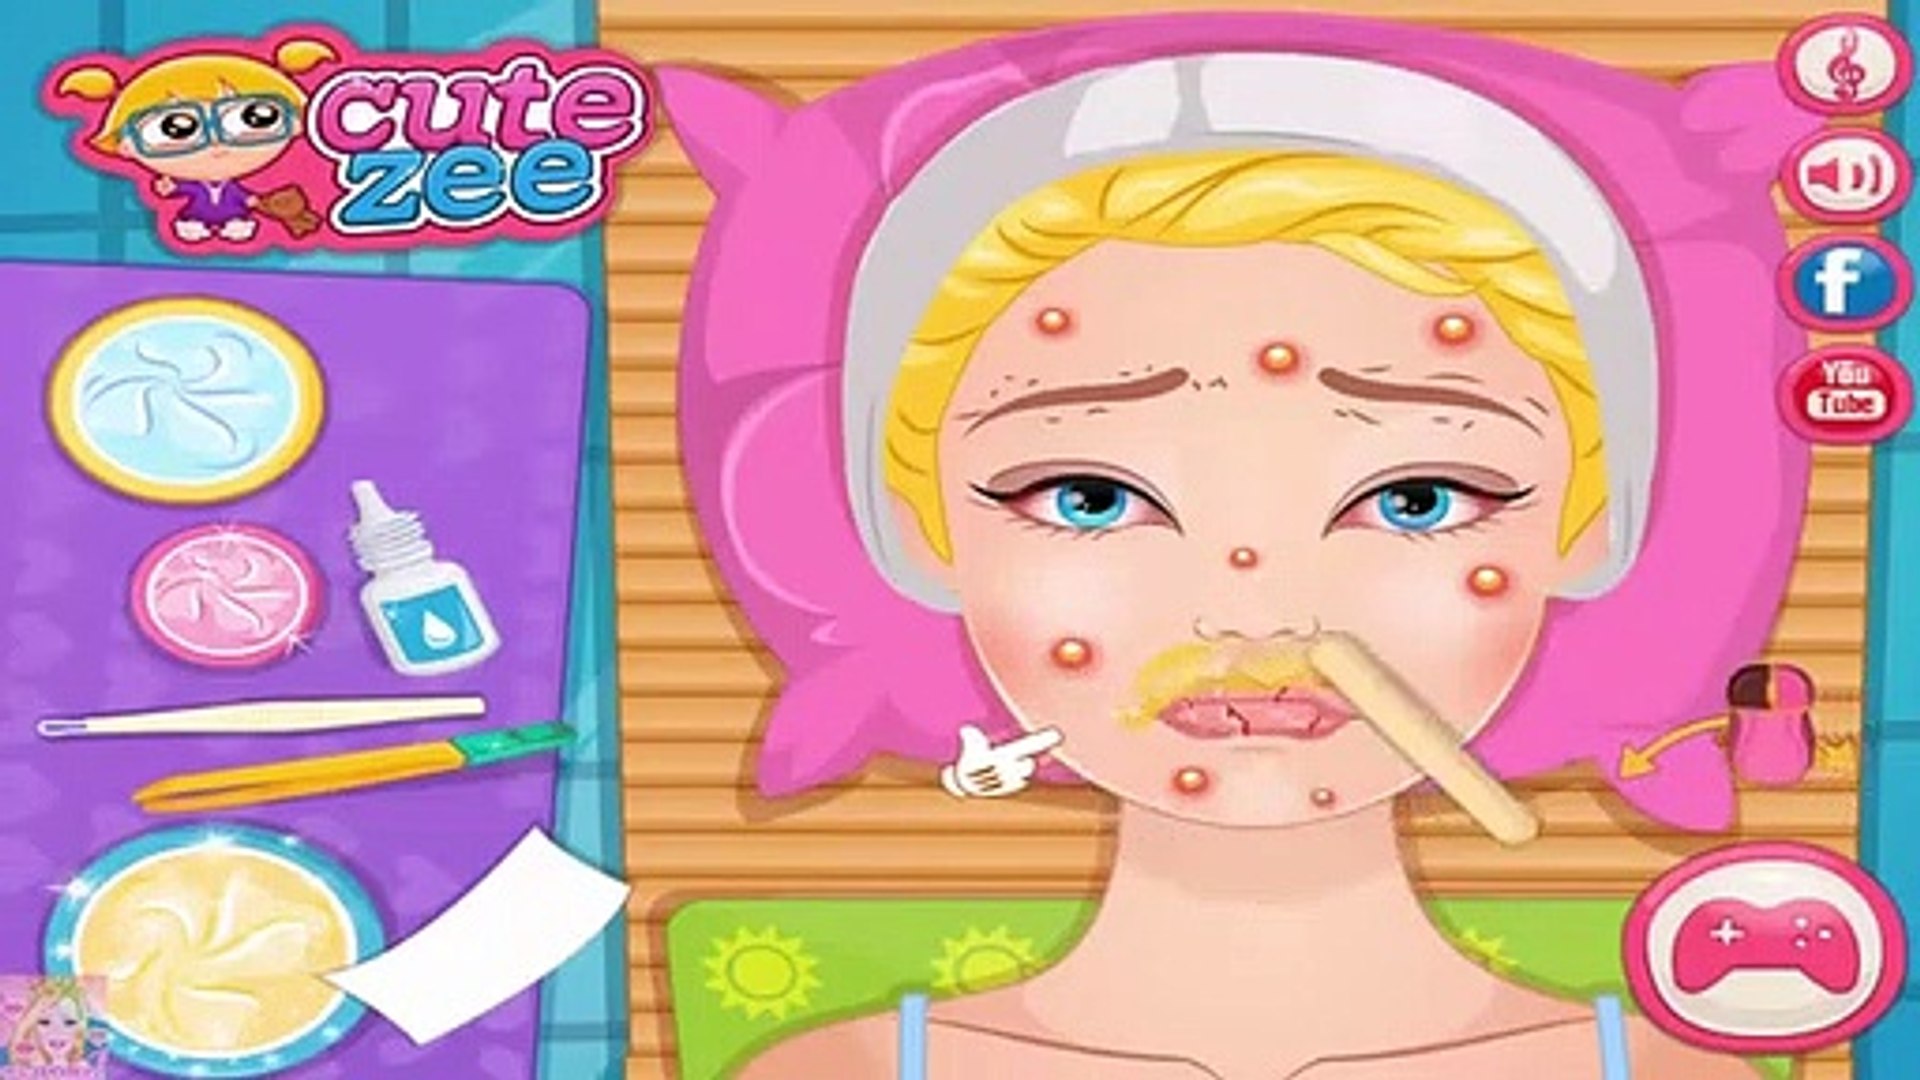 Jogos Online Gratis - Friv da Barbie de vestir a Barbie e o Ken -  Dailymotion Video